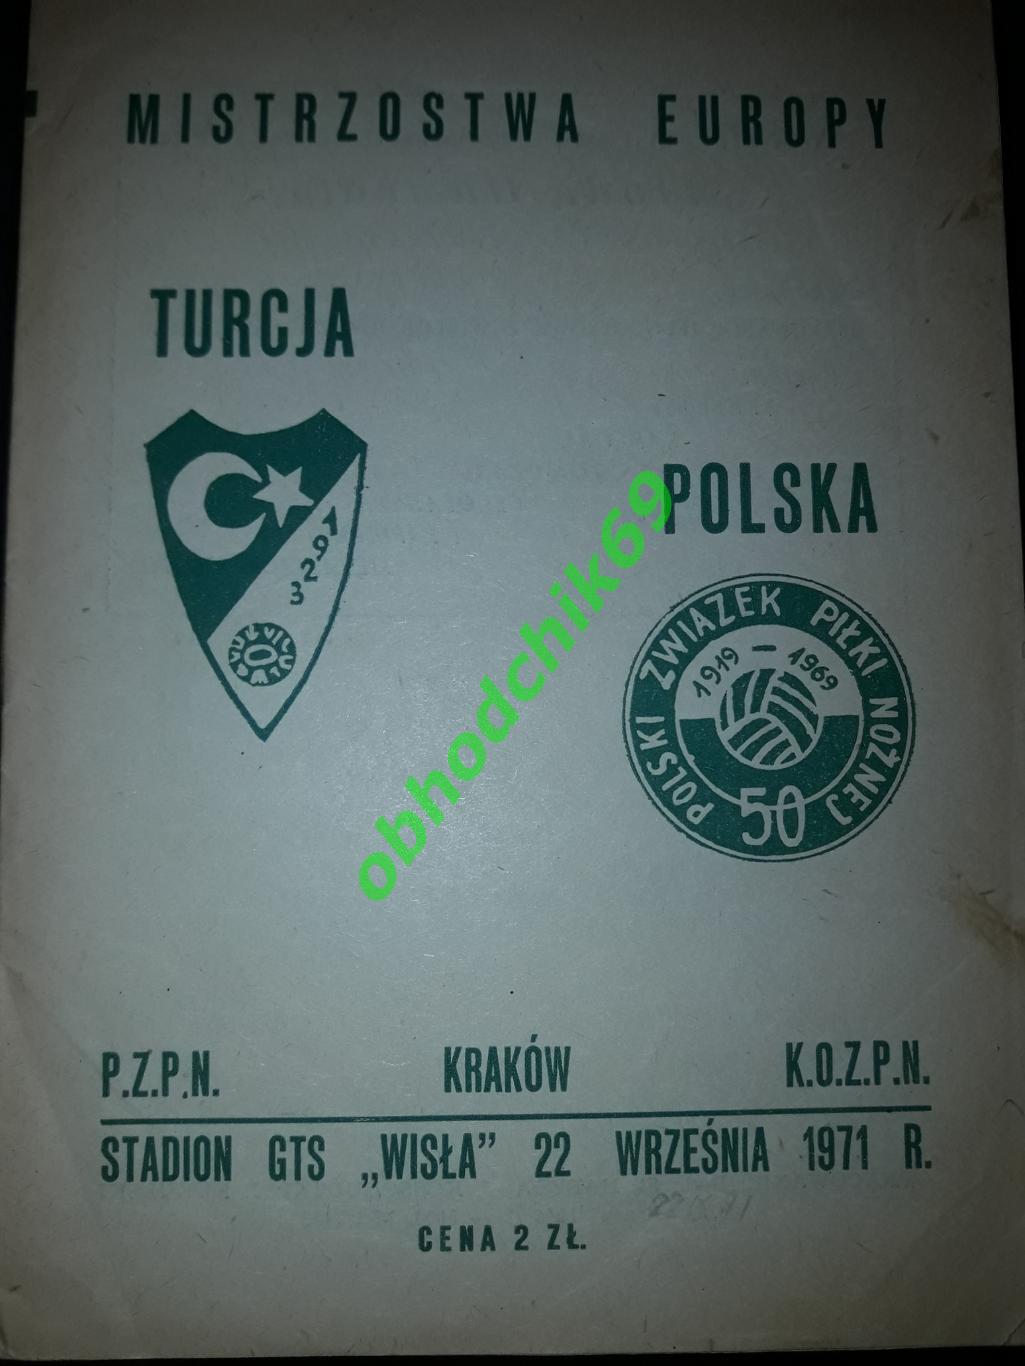 Польша - Турция_ сборная 22 09 1971 отборочный Чемпионата Европы 1972